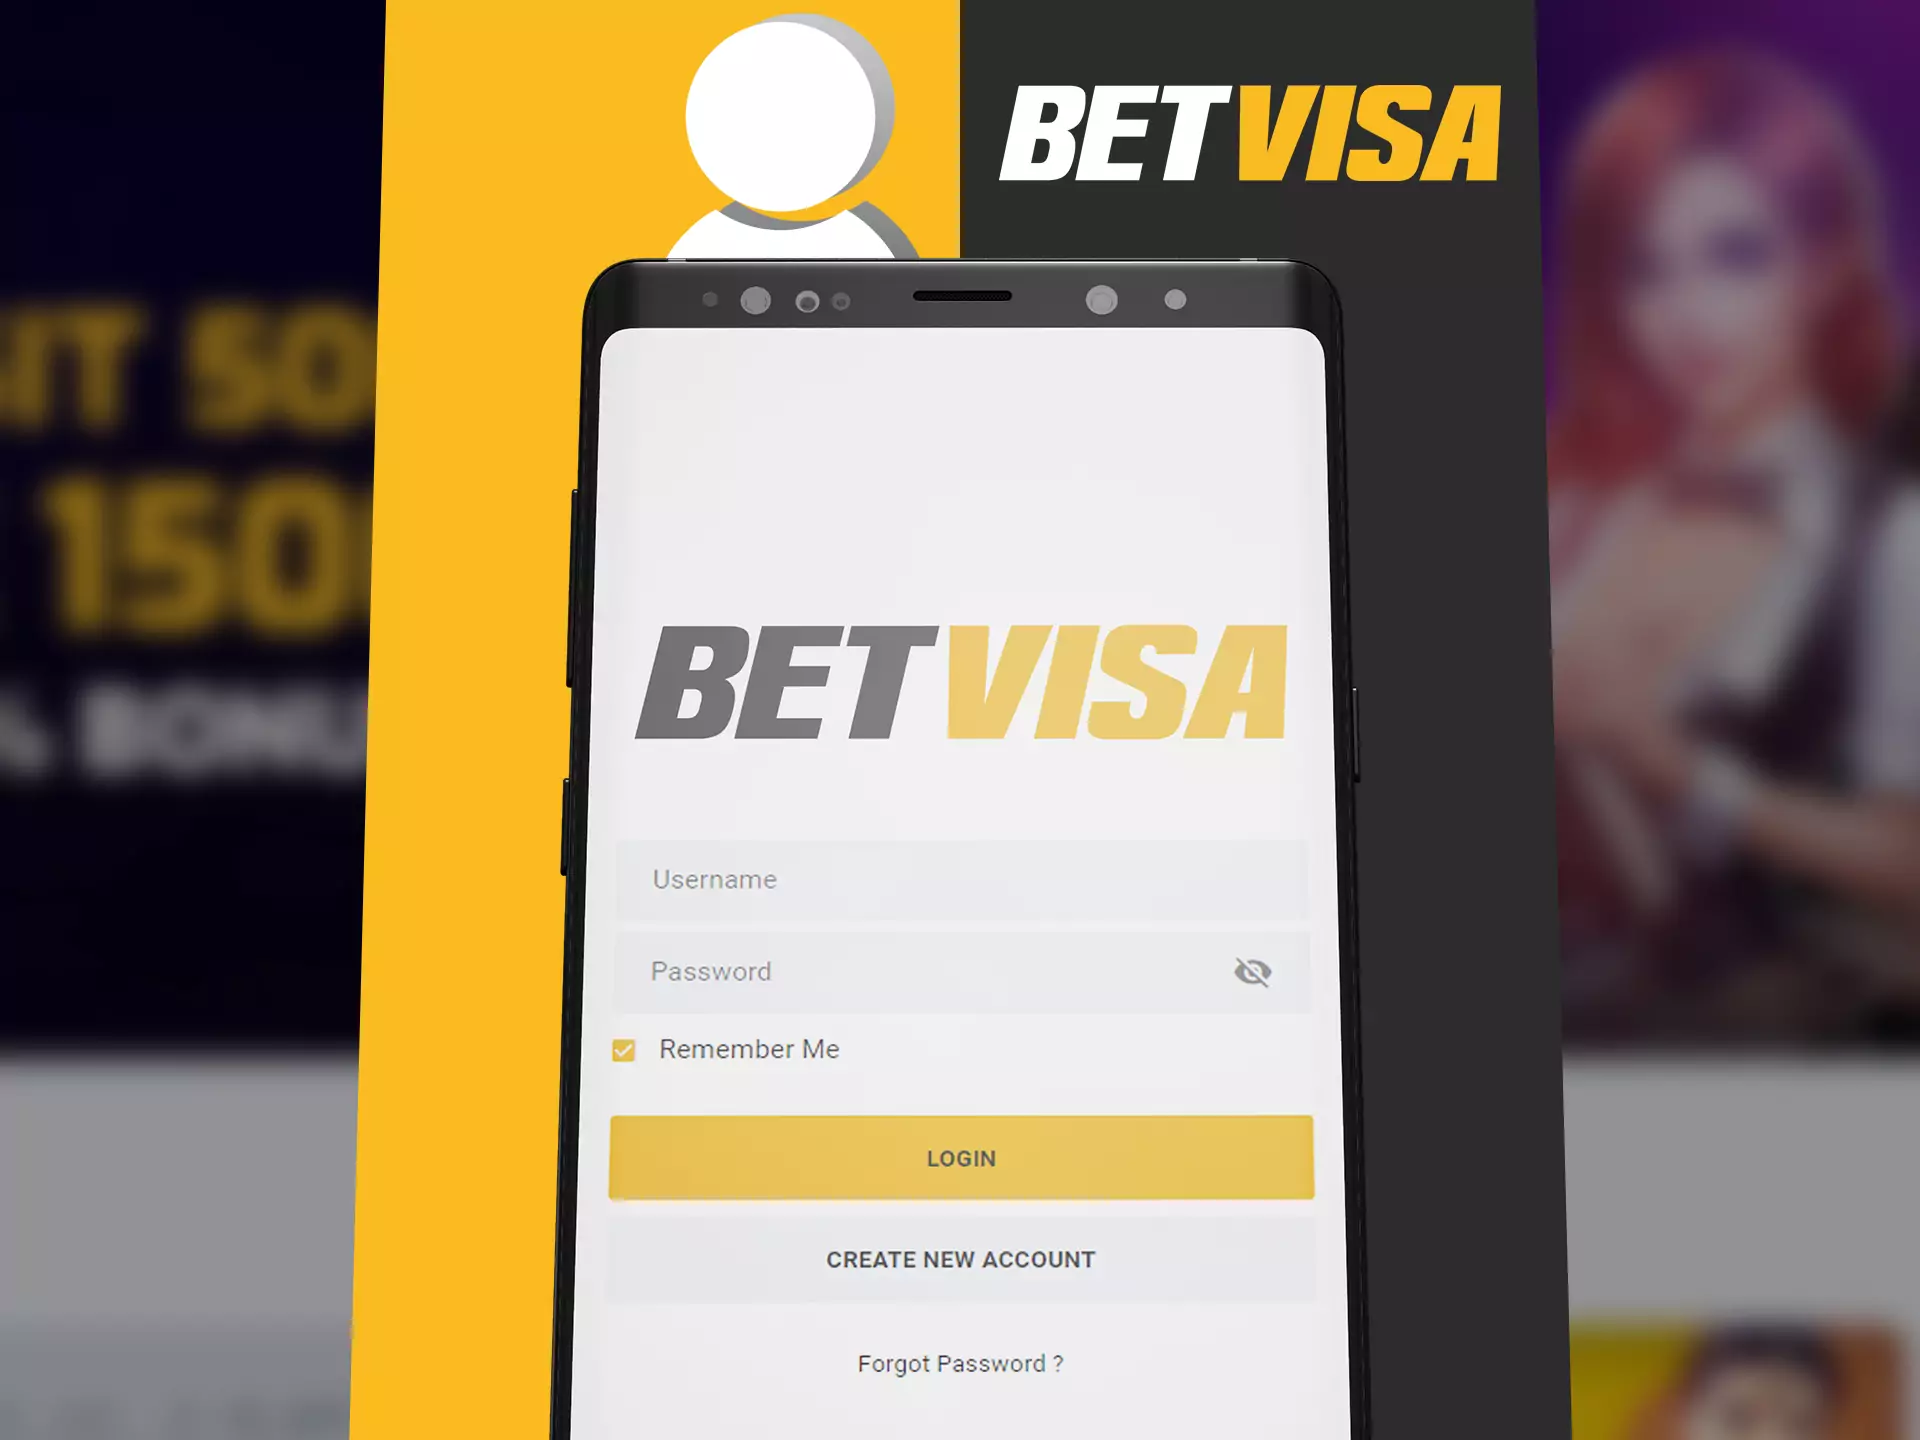 Log in Betvisa app for start betting process.